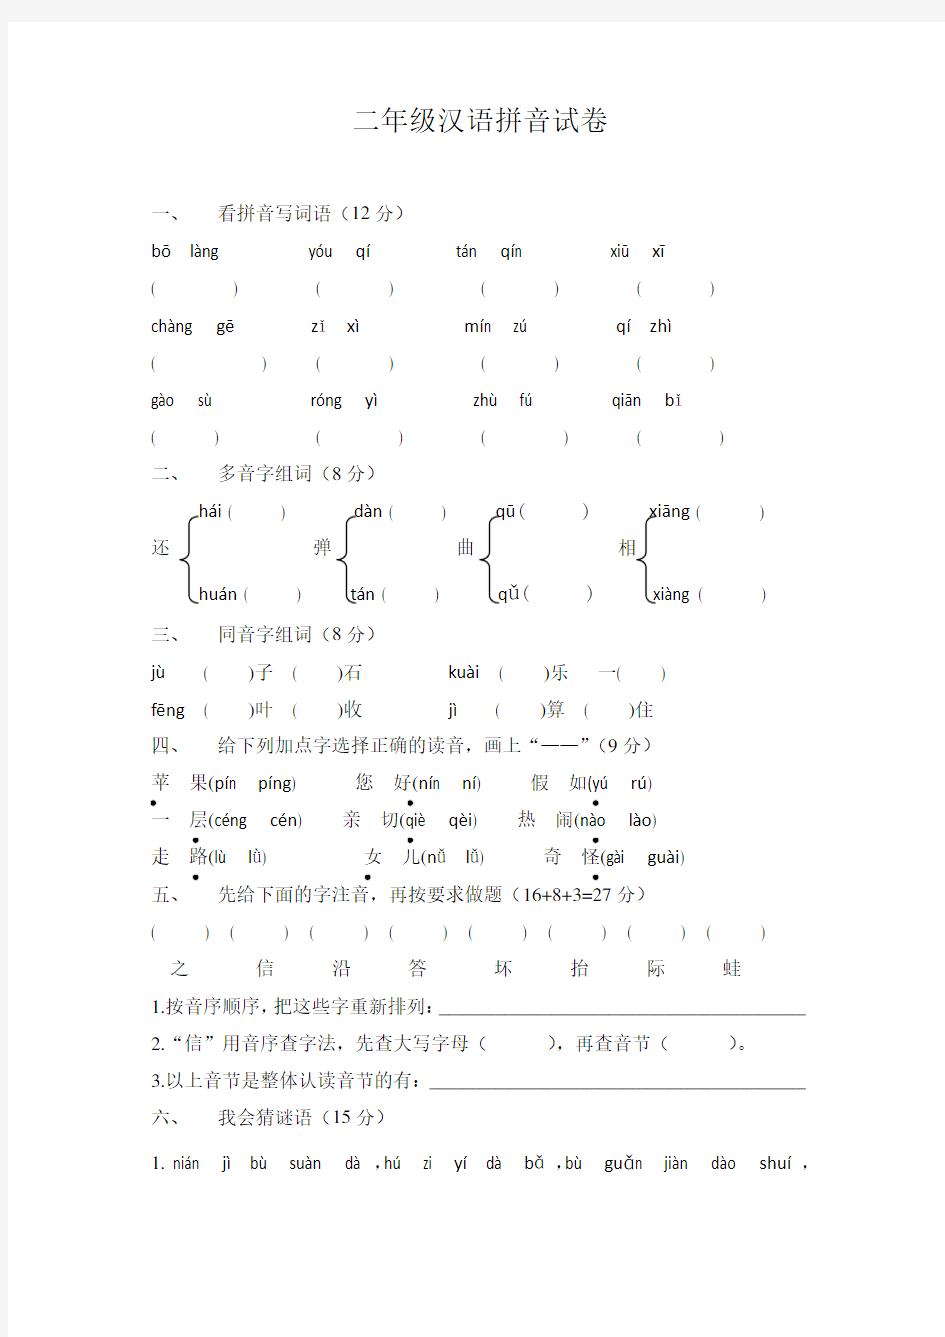 (完整)二年级汉语拼音试卷